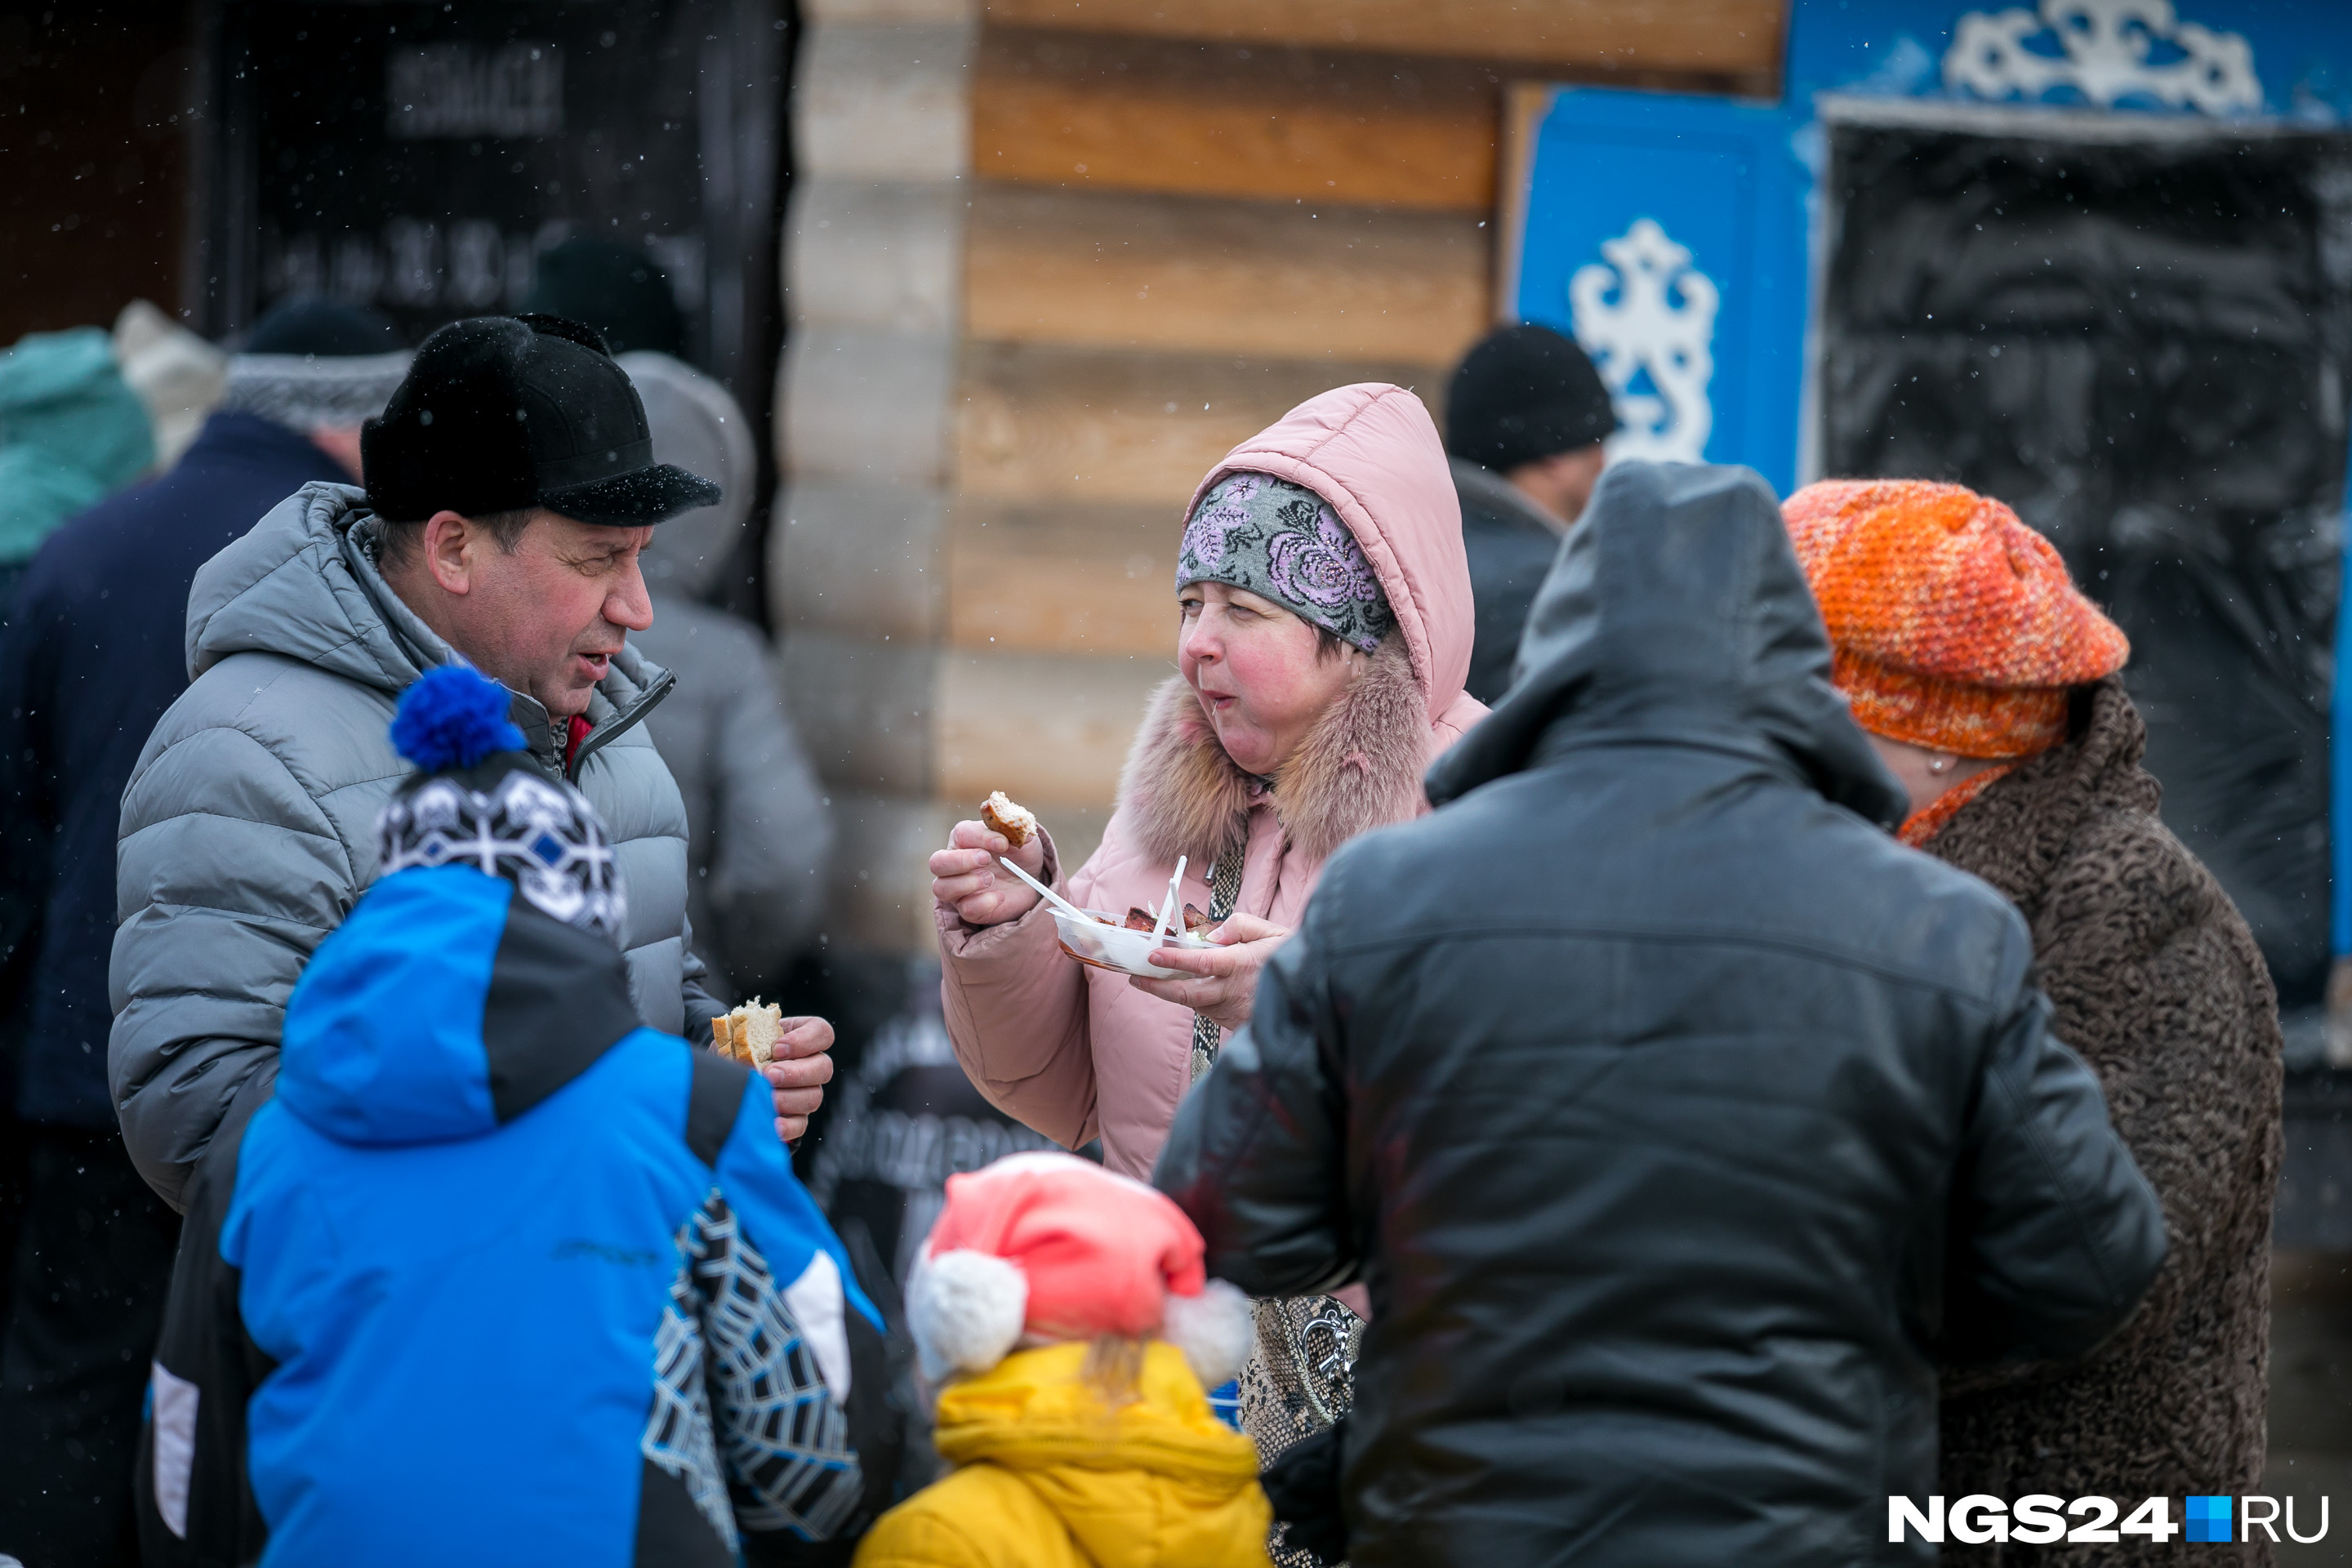 Горячие закуски помогали на замерзнуть — на улице сегодня прохладно